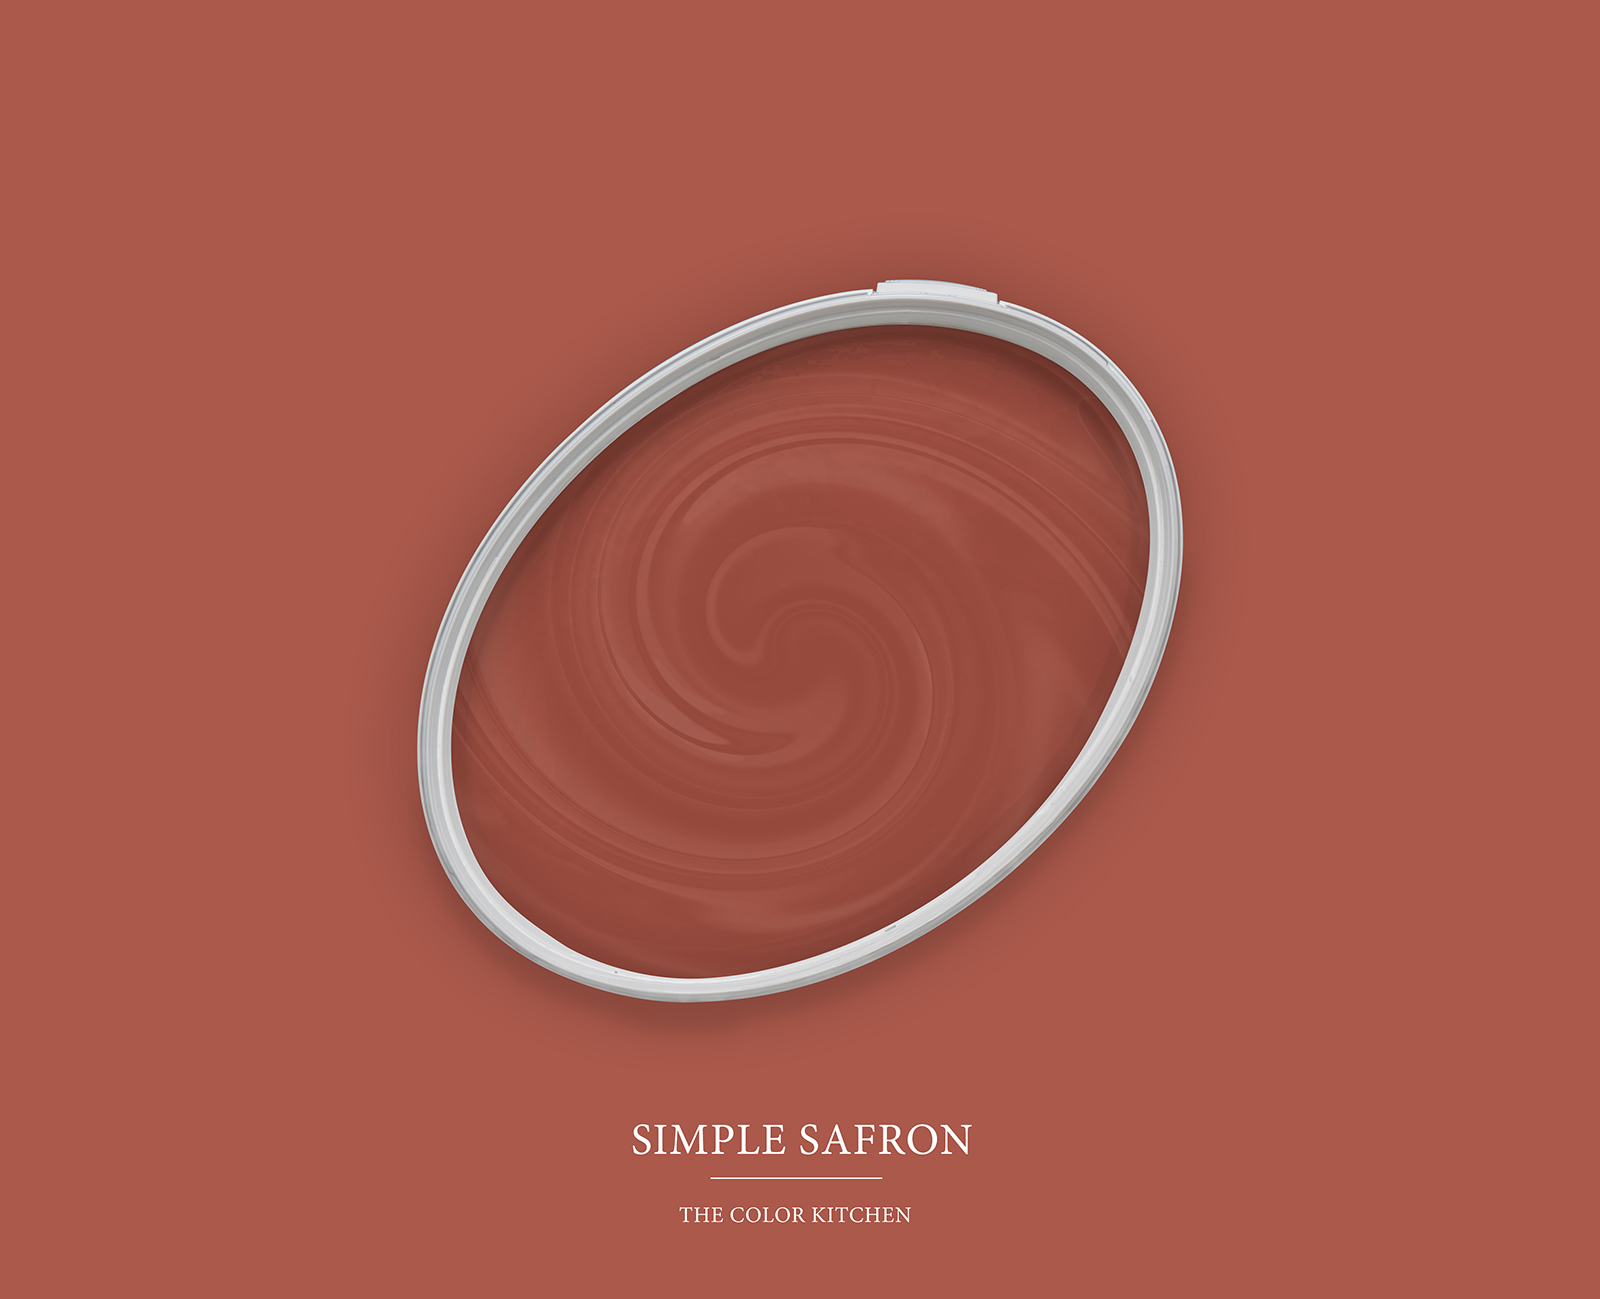         Wall Paint TCK5013 »Simple Safron« in intense saffron – 2.5 litre
    